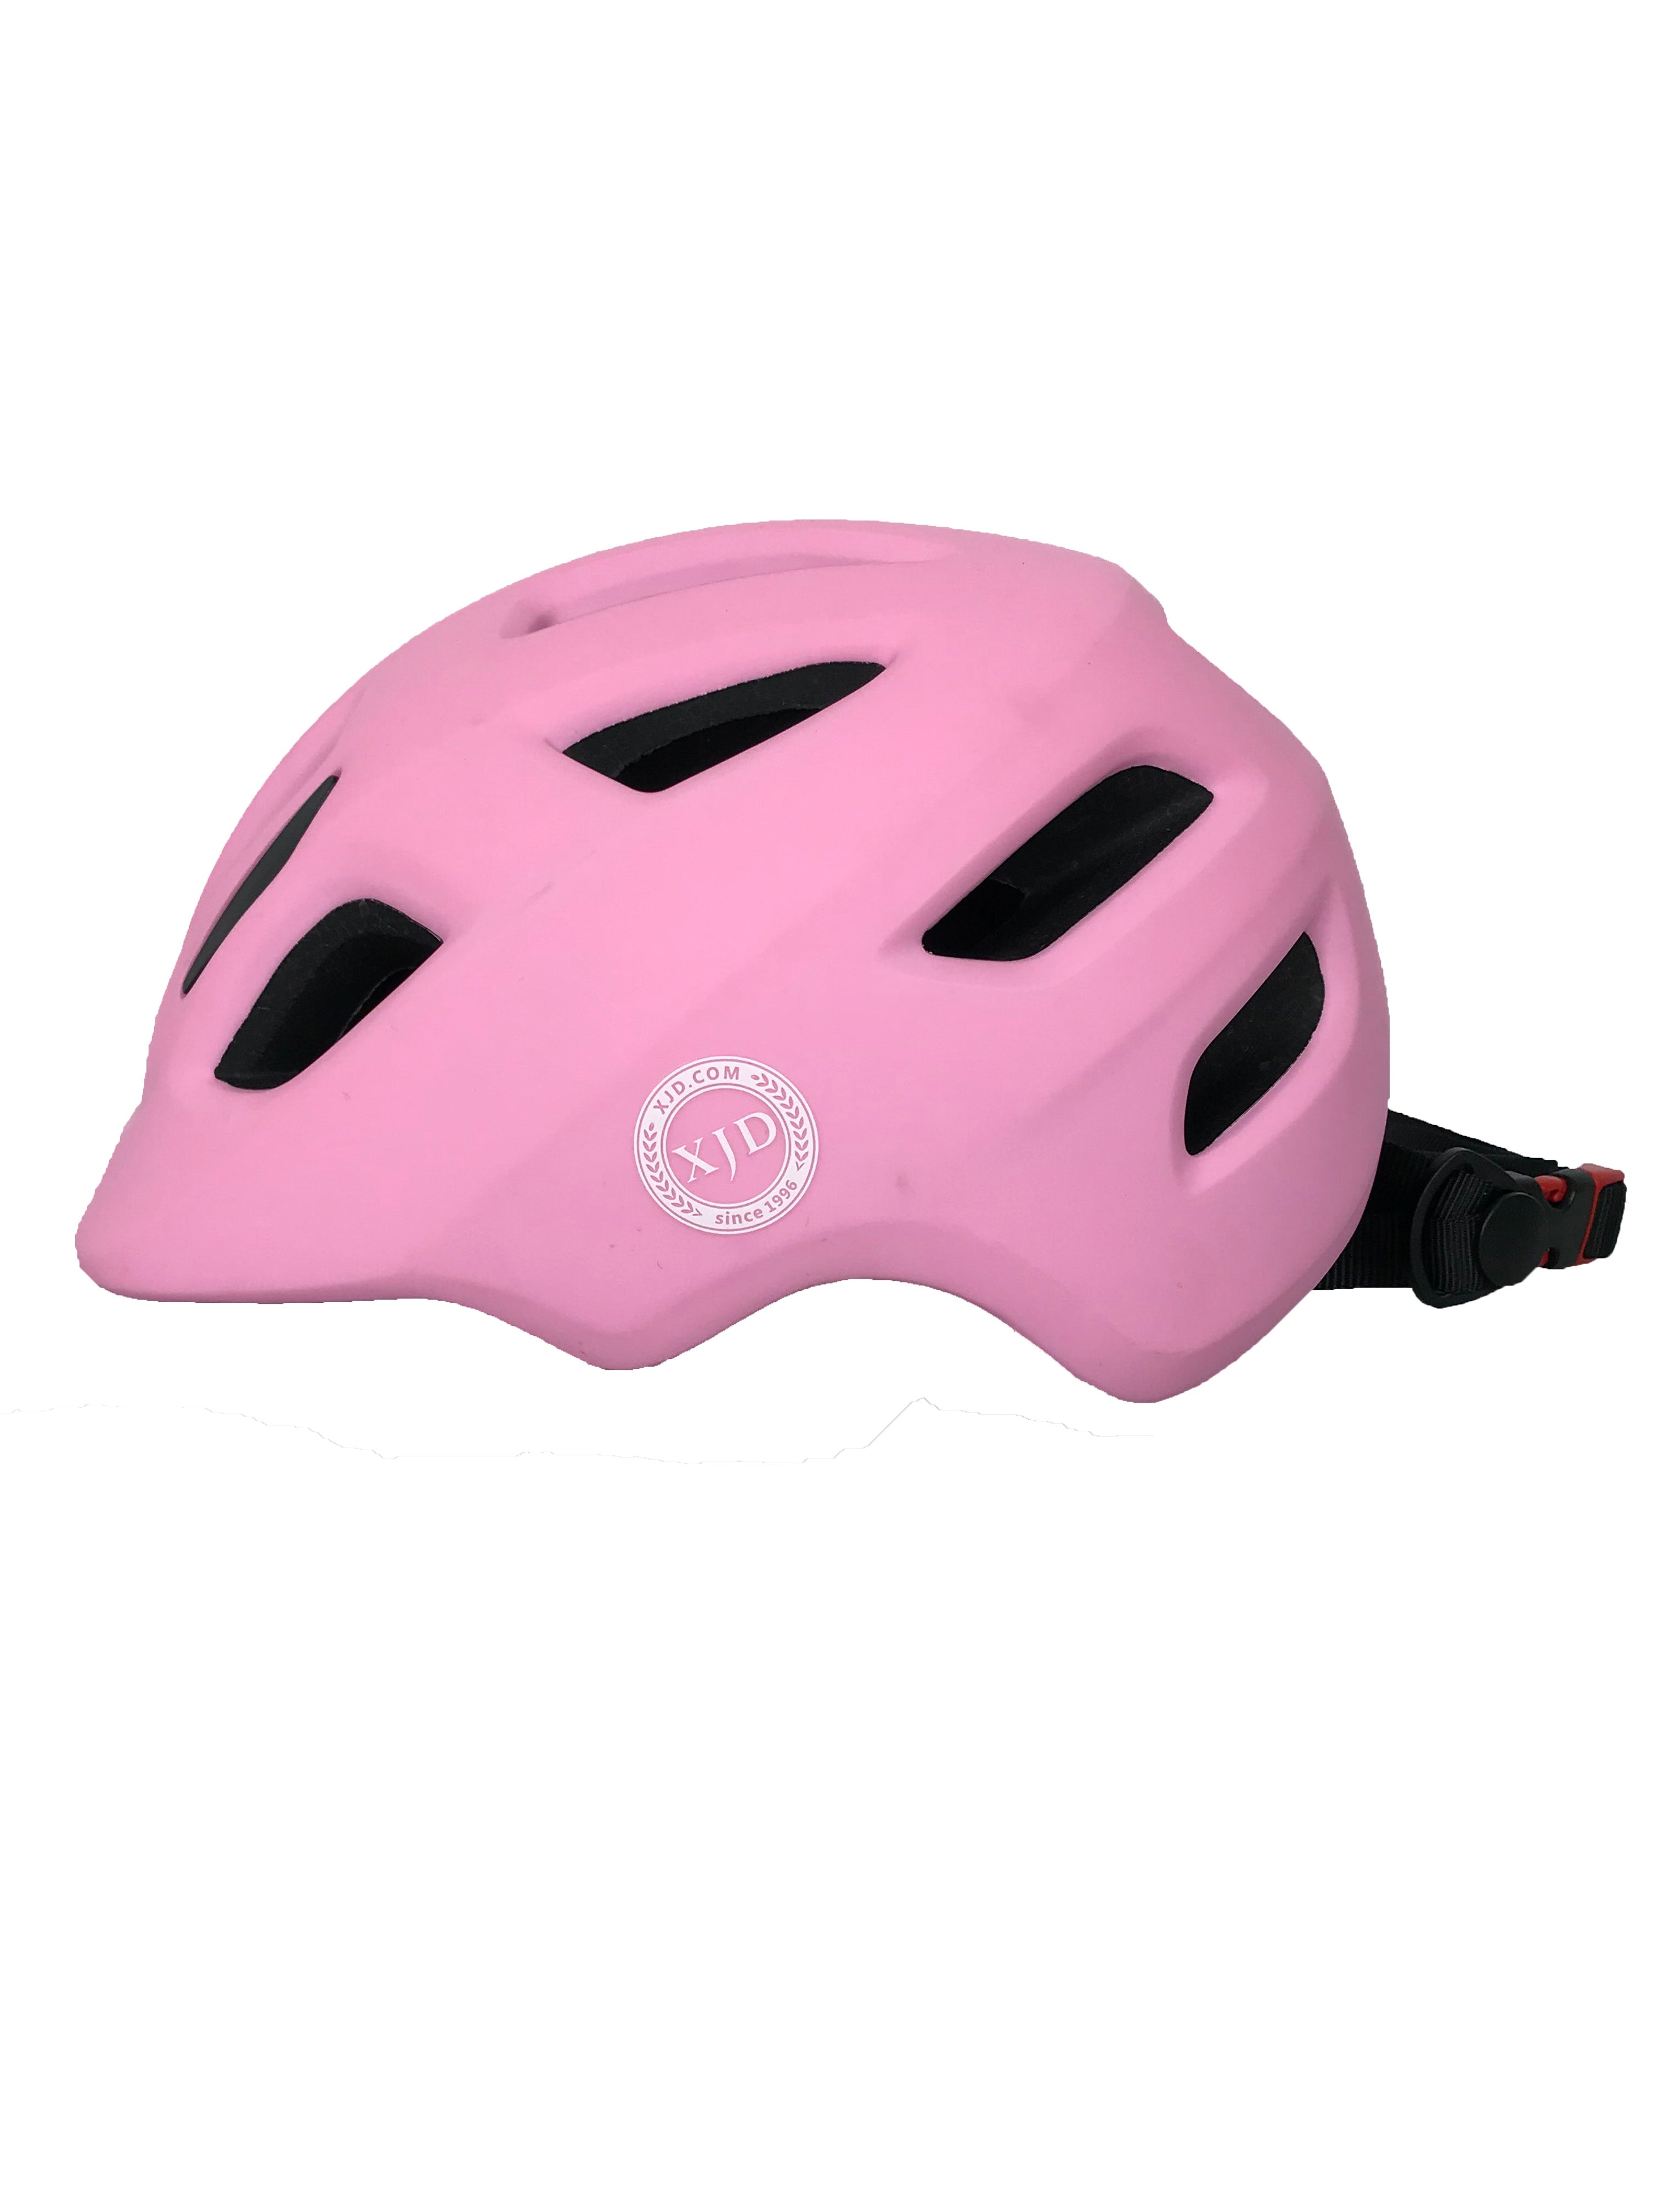 XJD Pink Adjustable Kid's Bike Helmet Size S